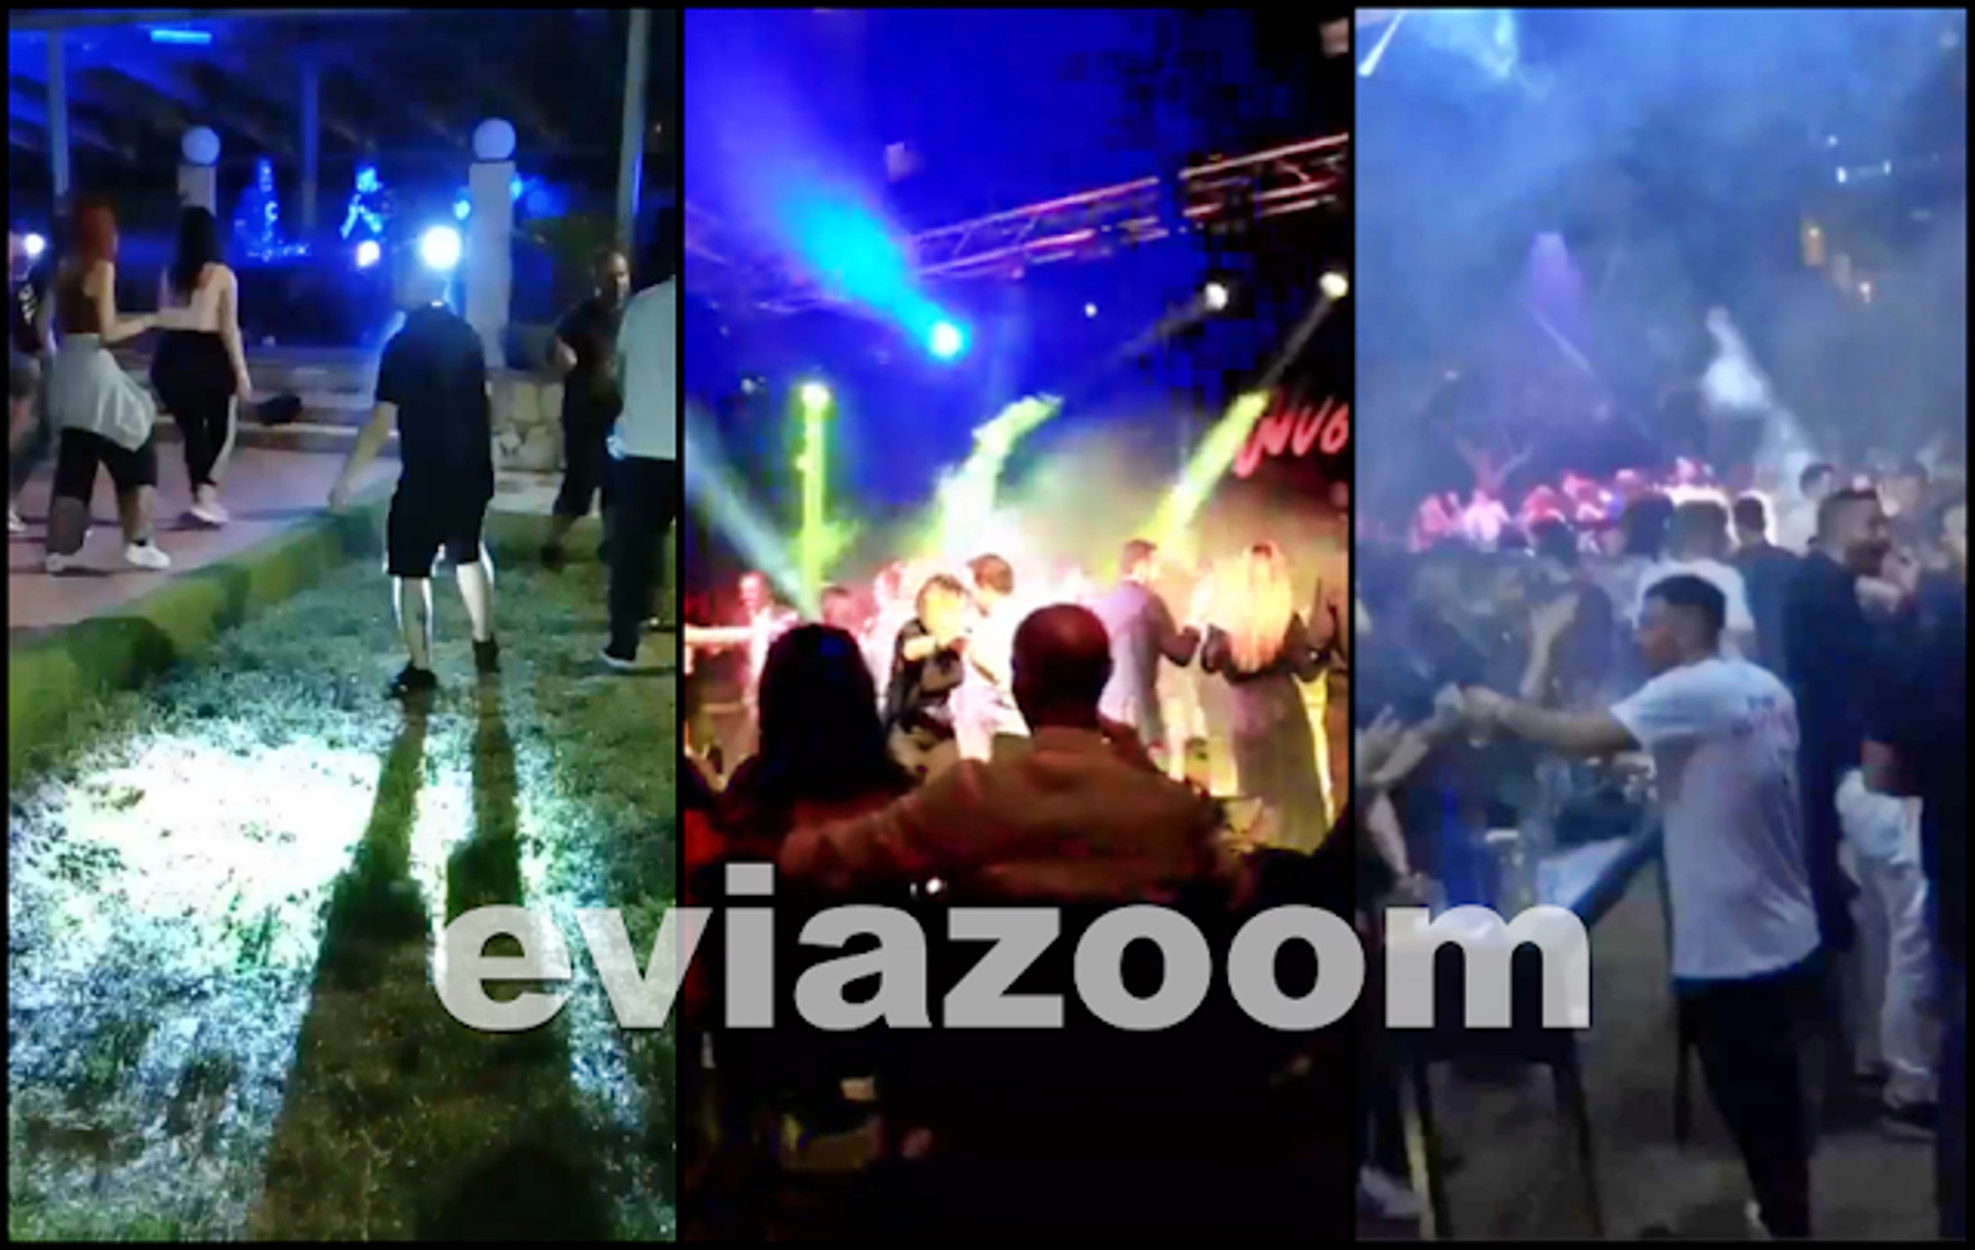 Χαλκίδα: Χορός, διασκέδαση και… συνωστισμός μέχρι το πρωί! Εικόνες από άλλη πραγματικότητα (pics, video)